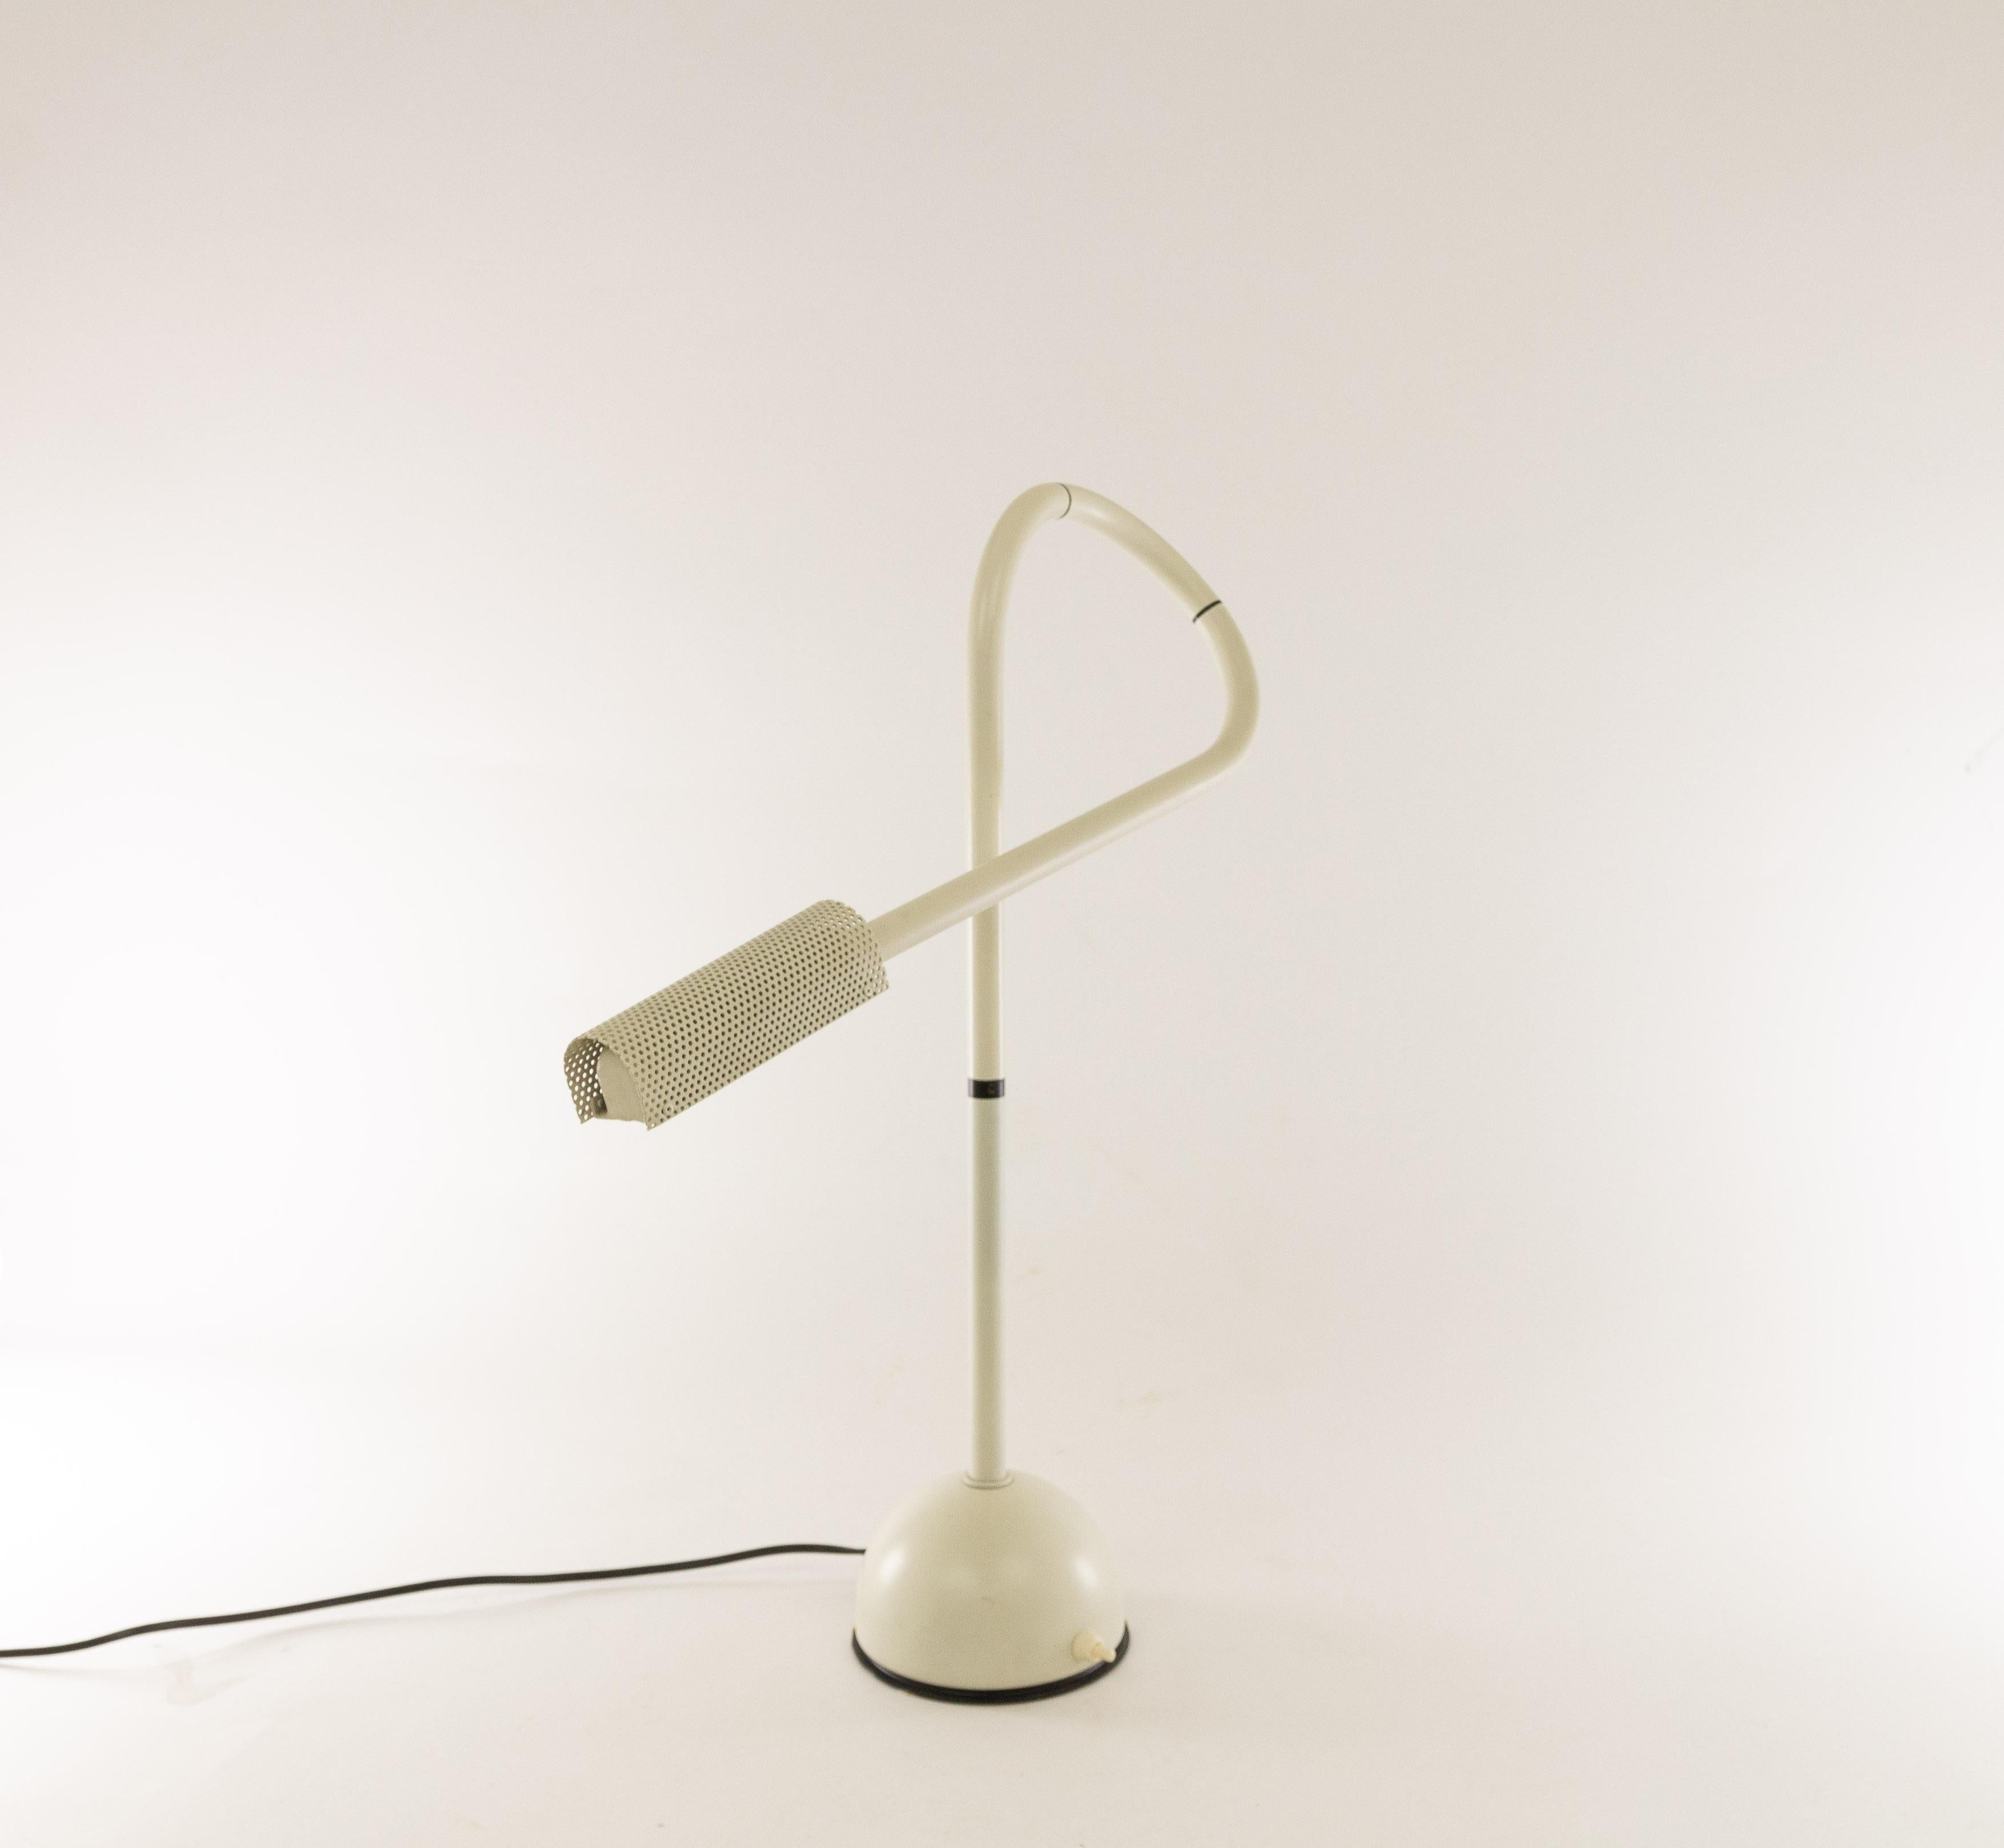 Lampe de table Stringa créée par le designer néerlandais Hans Ansems et fabriquée par Luxo Italiana en 1982.

La structure originale et une solution technologique brillante de la lampe de table permettent une flexibilité totale et offrent une